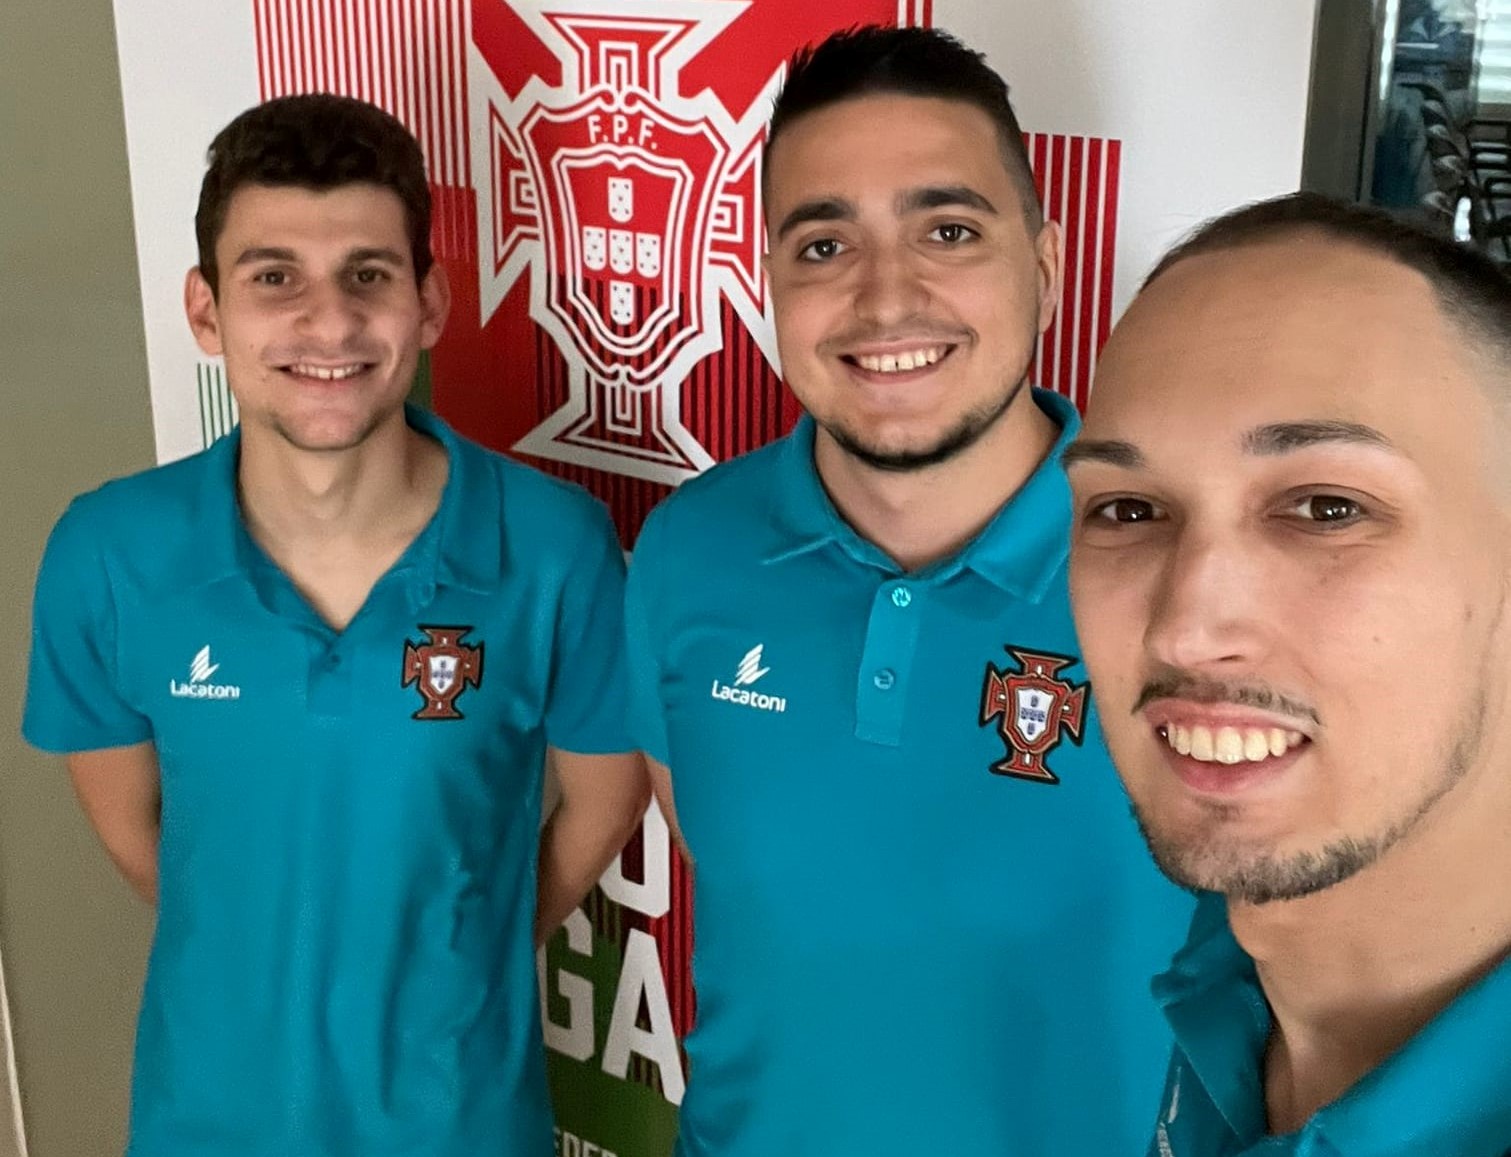 Três árbitros de futsal da AF Setúbal promovidos aos quadros federativos